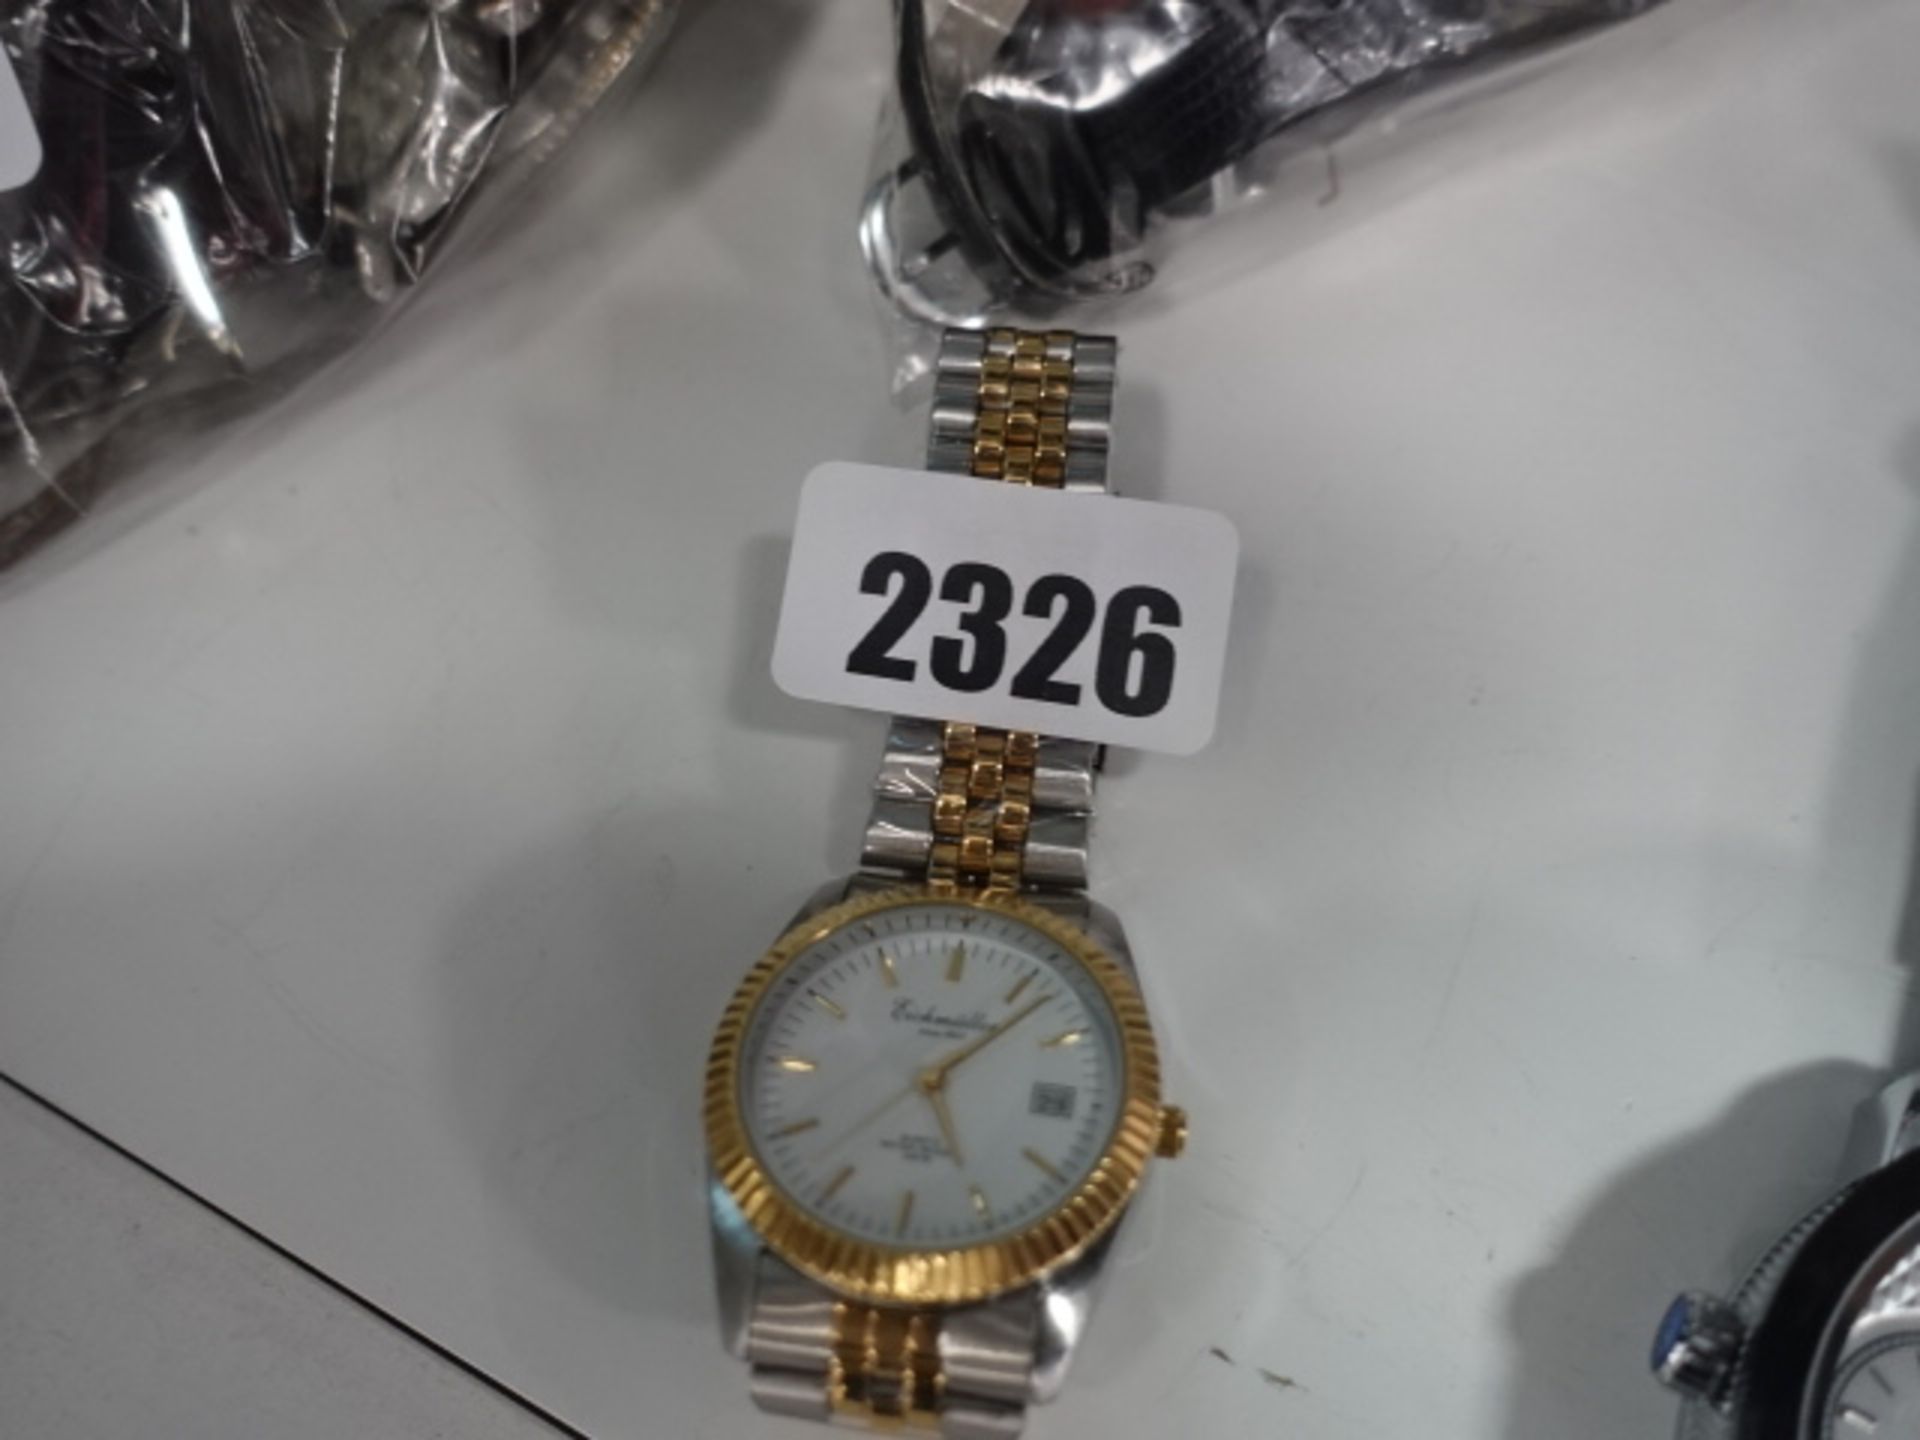 Eichmuller quartz wristwatch with stainless steel strap